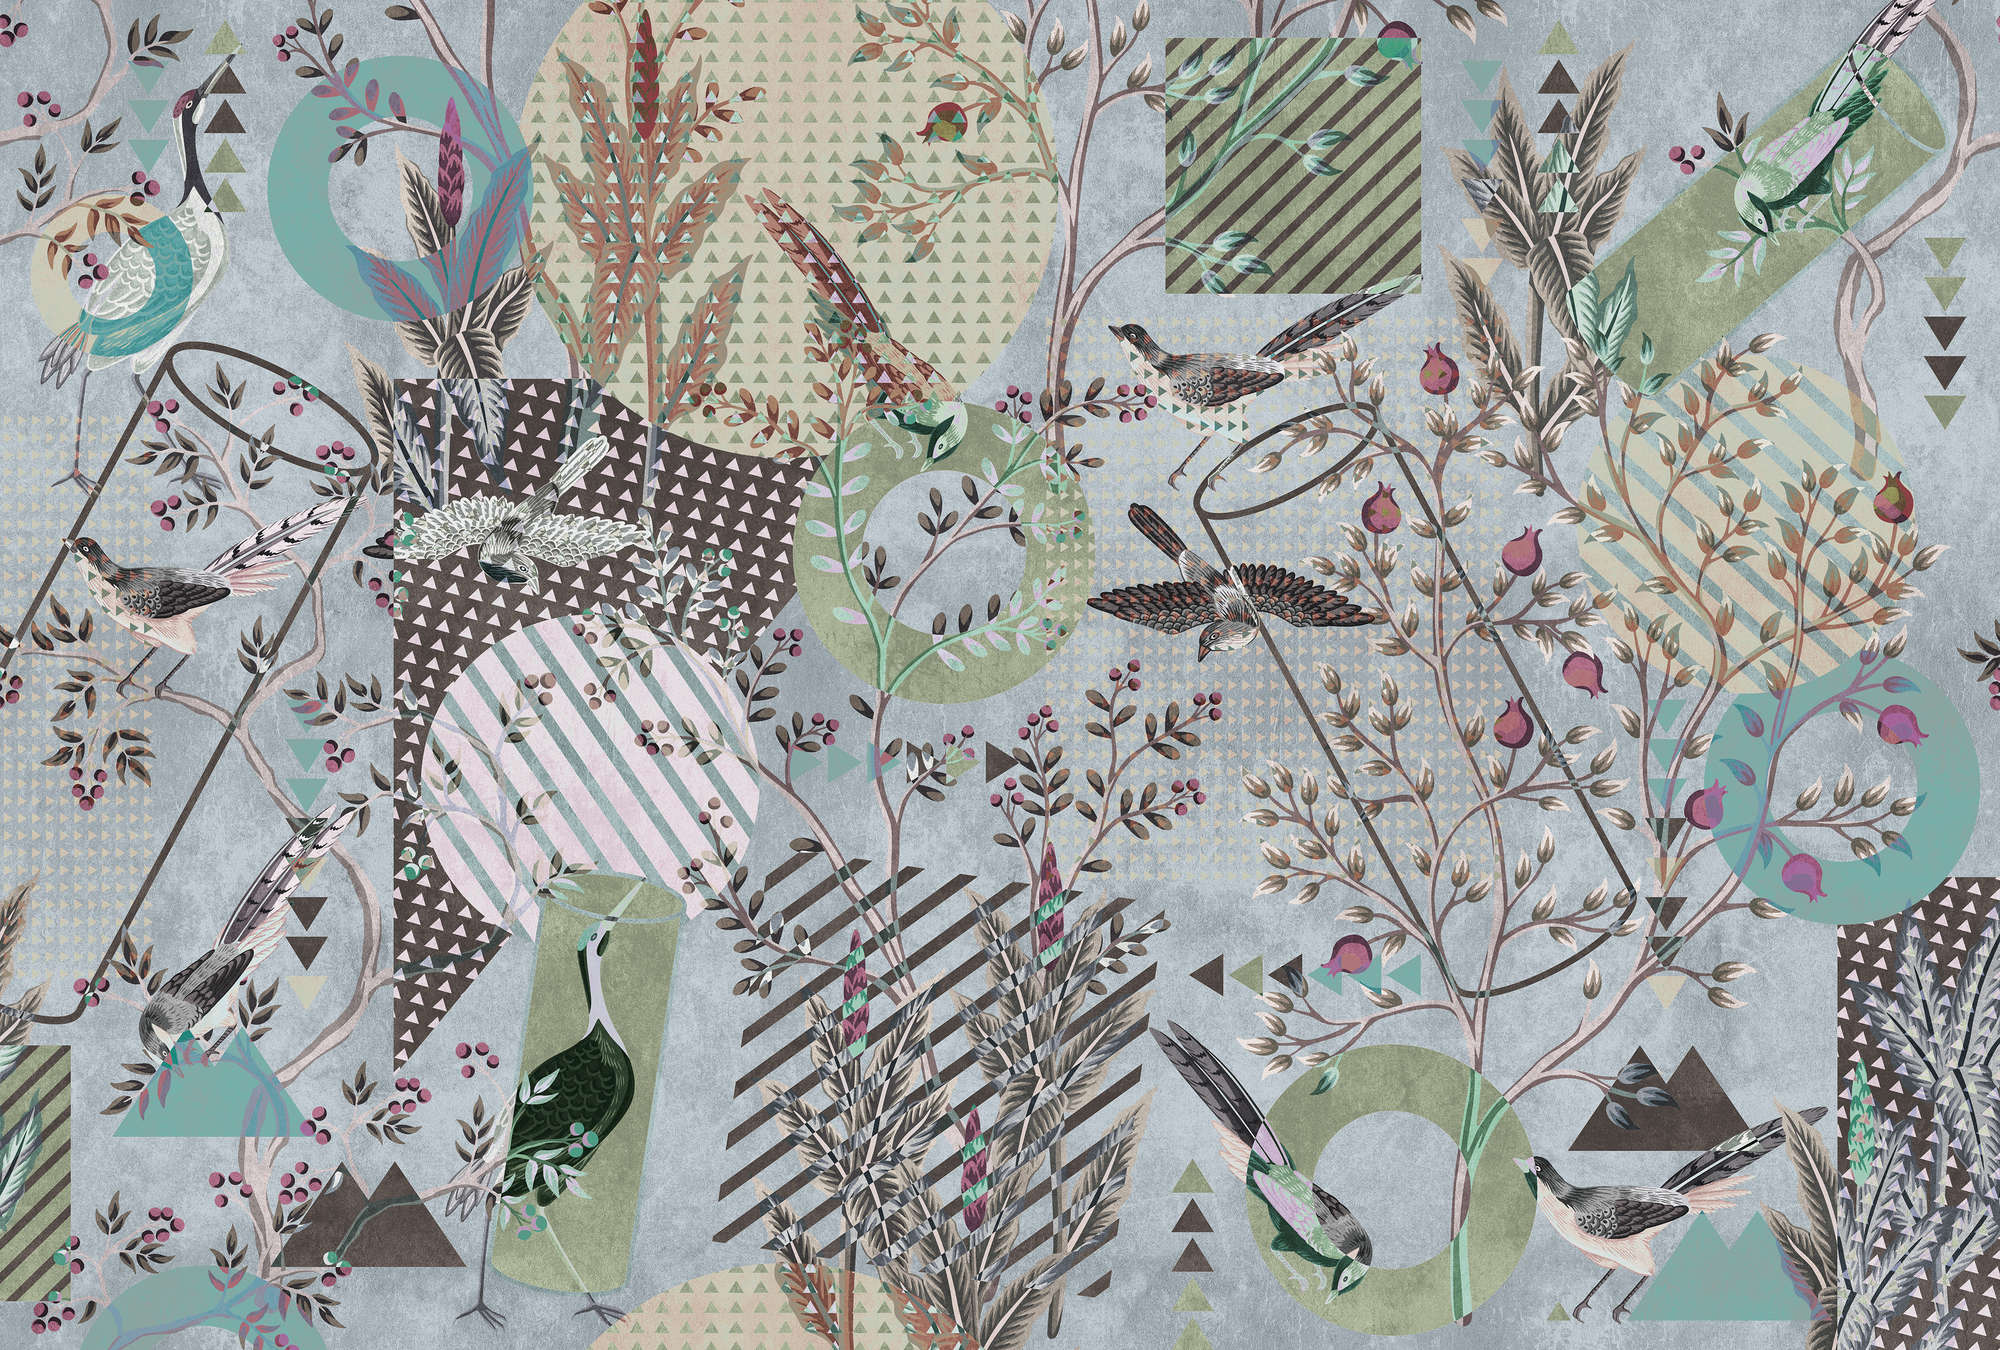             Birds Playground 2 - Collage de papel pintado de pájaros y mezcla de patrones
        